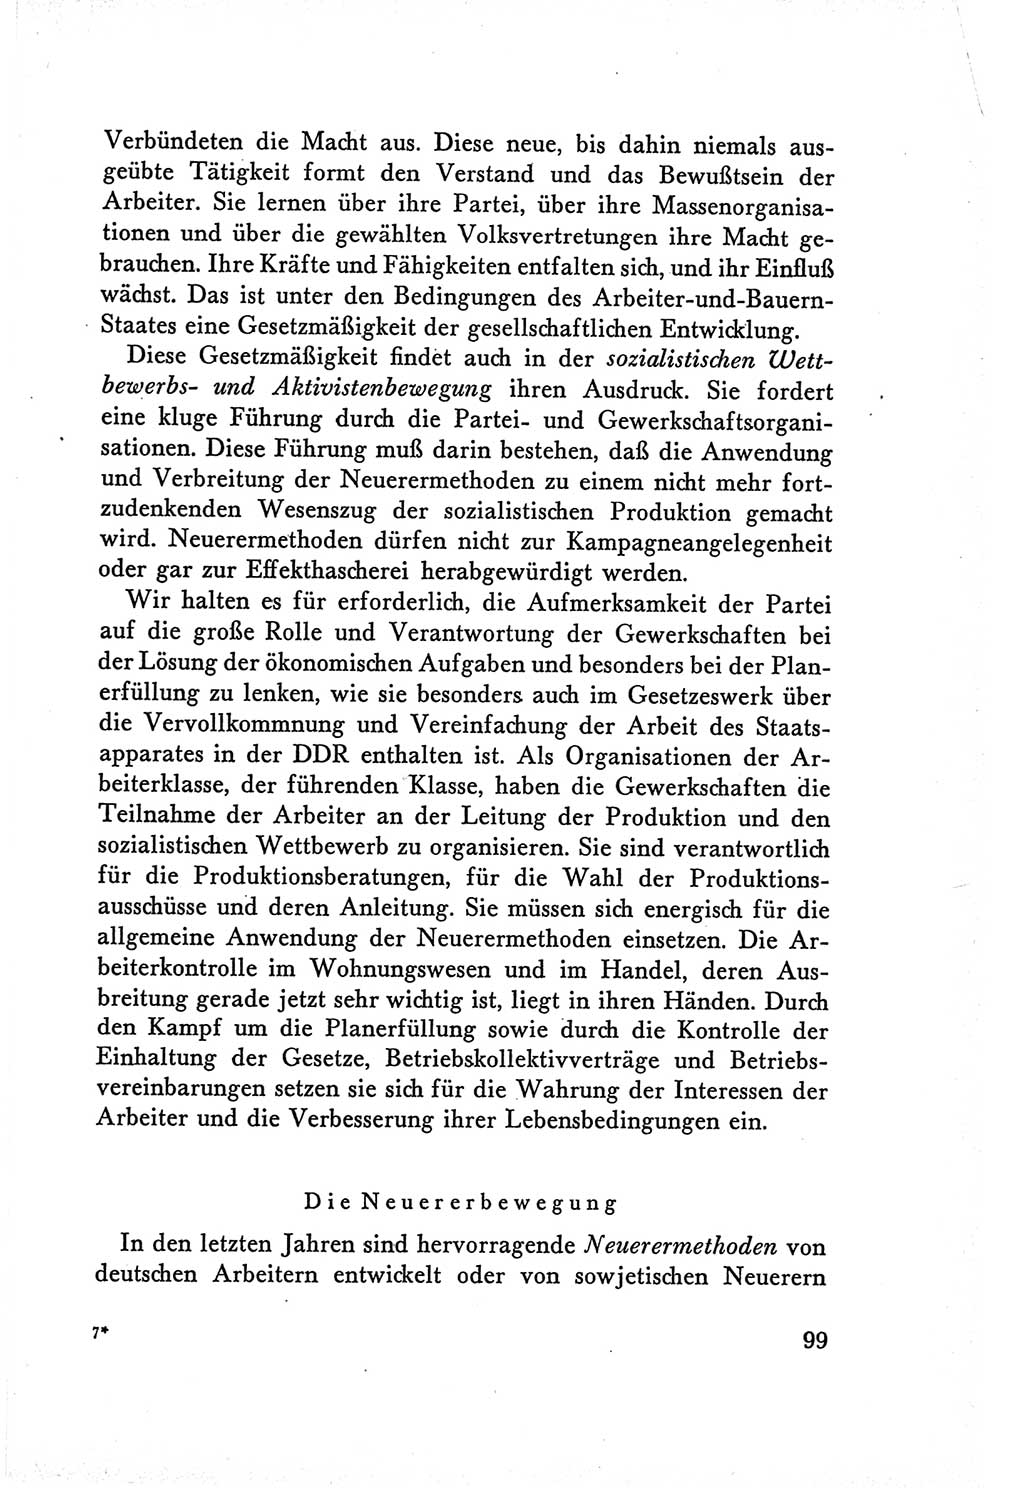 Protokoll der Verhandlungen des Ⅴ. Parteitages der Sozialistischen Einheitspartei Deutschlands (SED) [Deutsche Demokratische Republik (DDR)] 1958, Seite 99